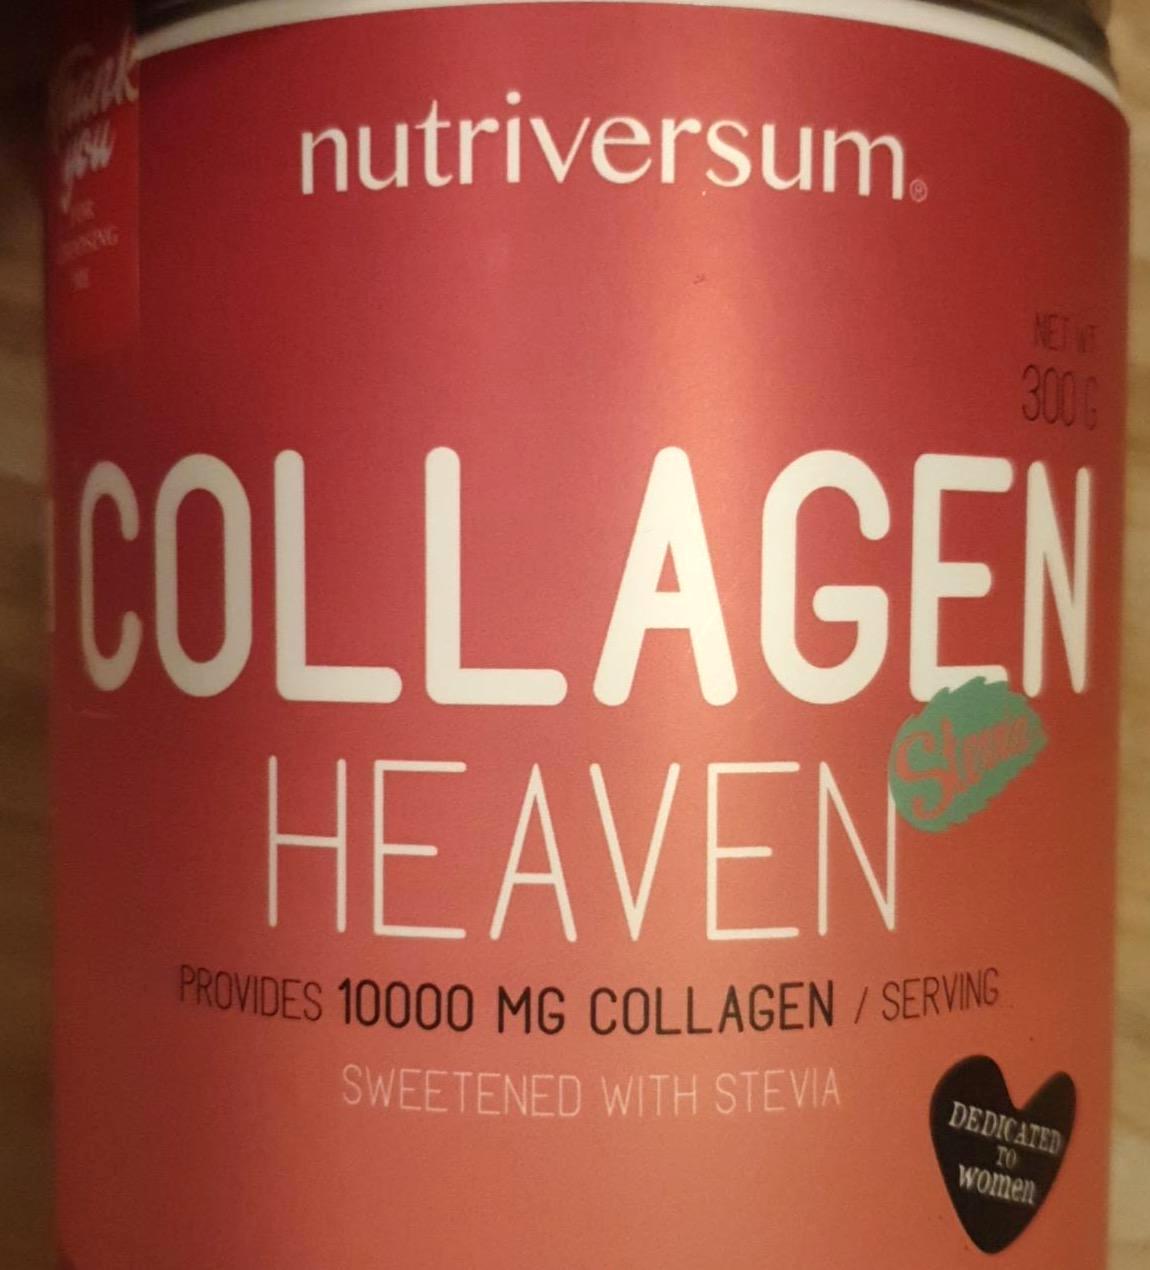 Képek - Collagen heaven Málna ízű Nutriversum